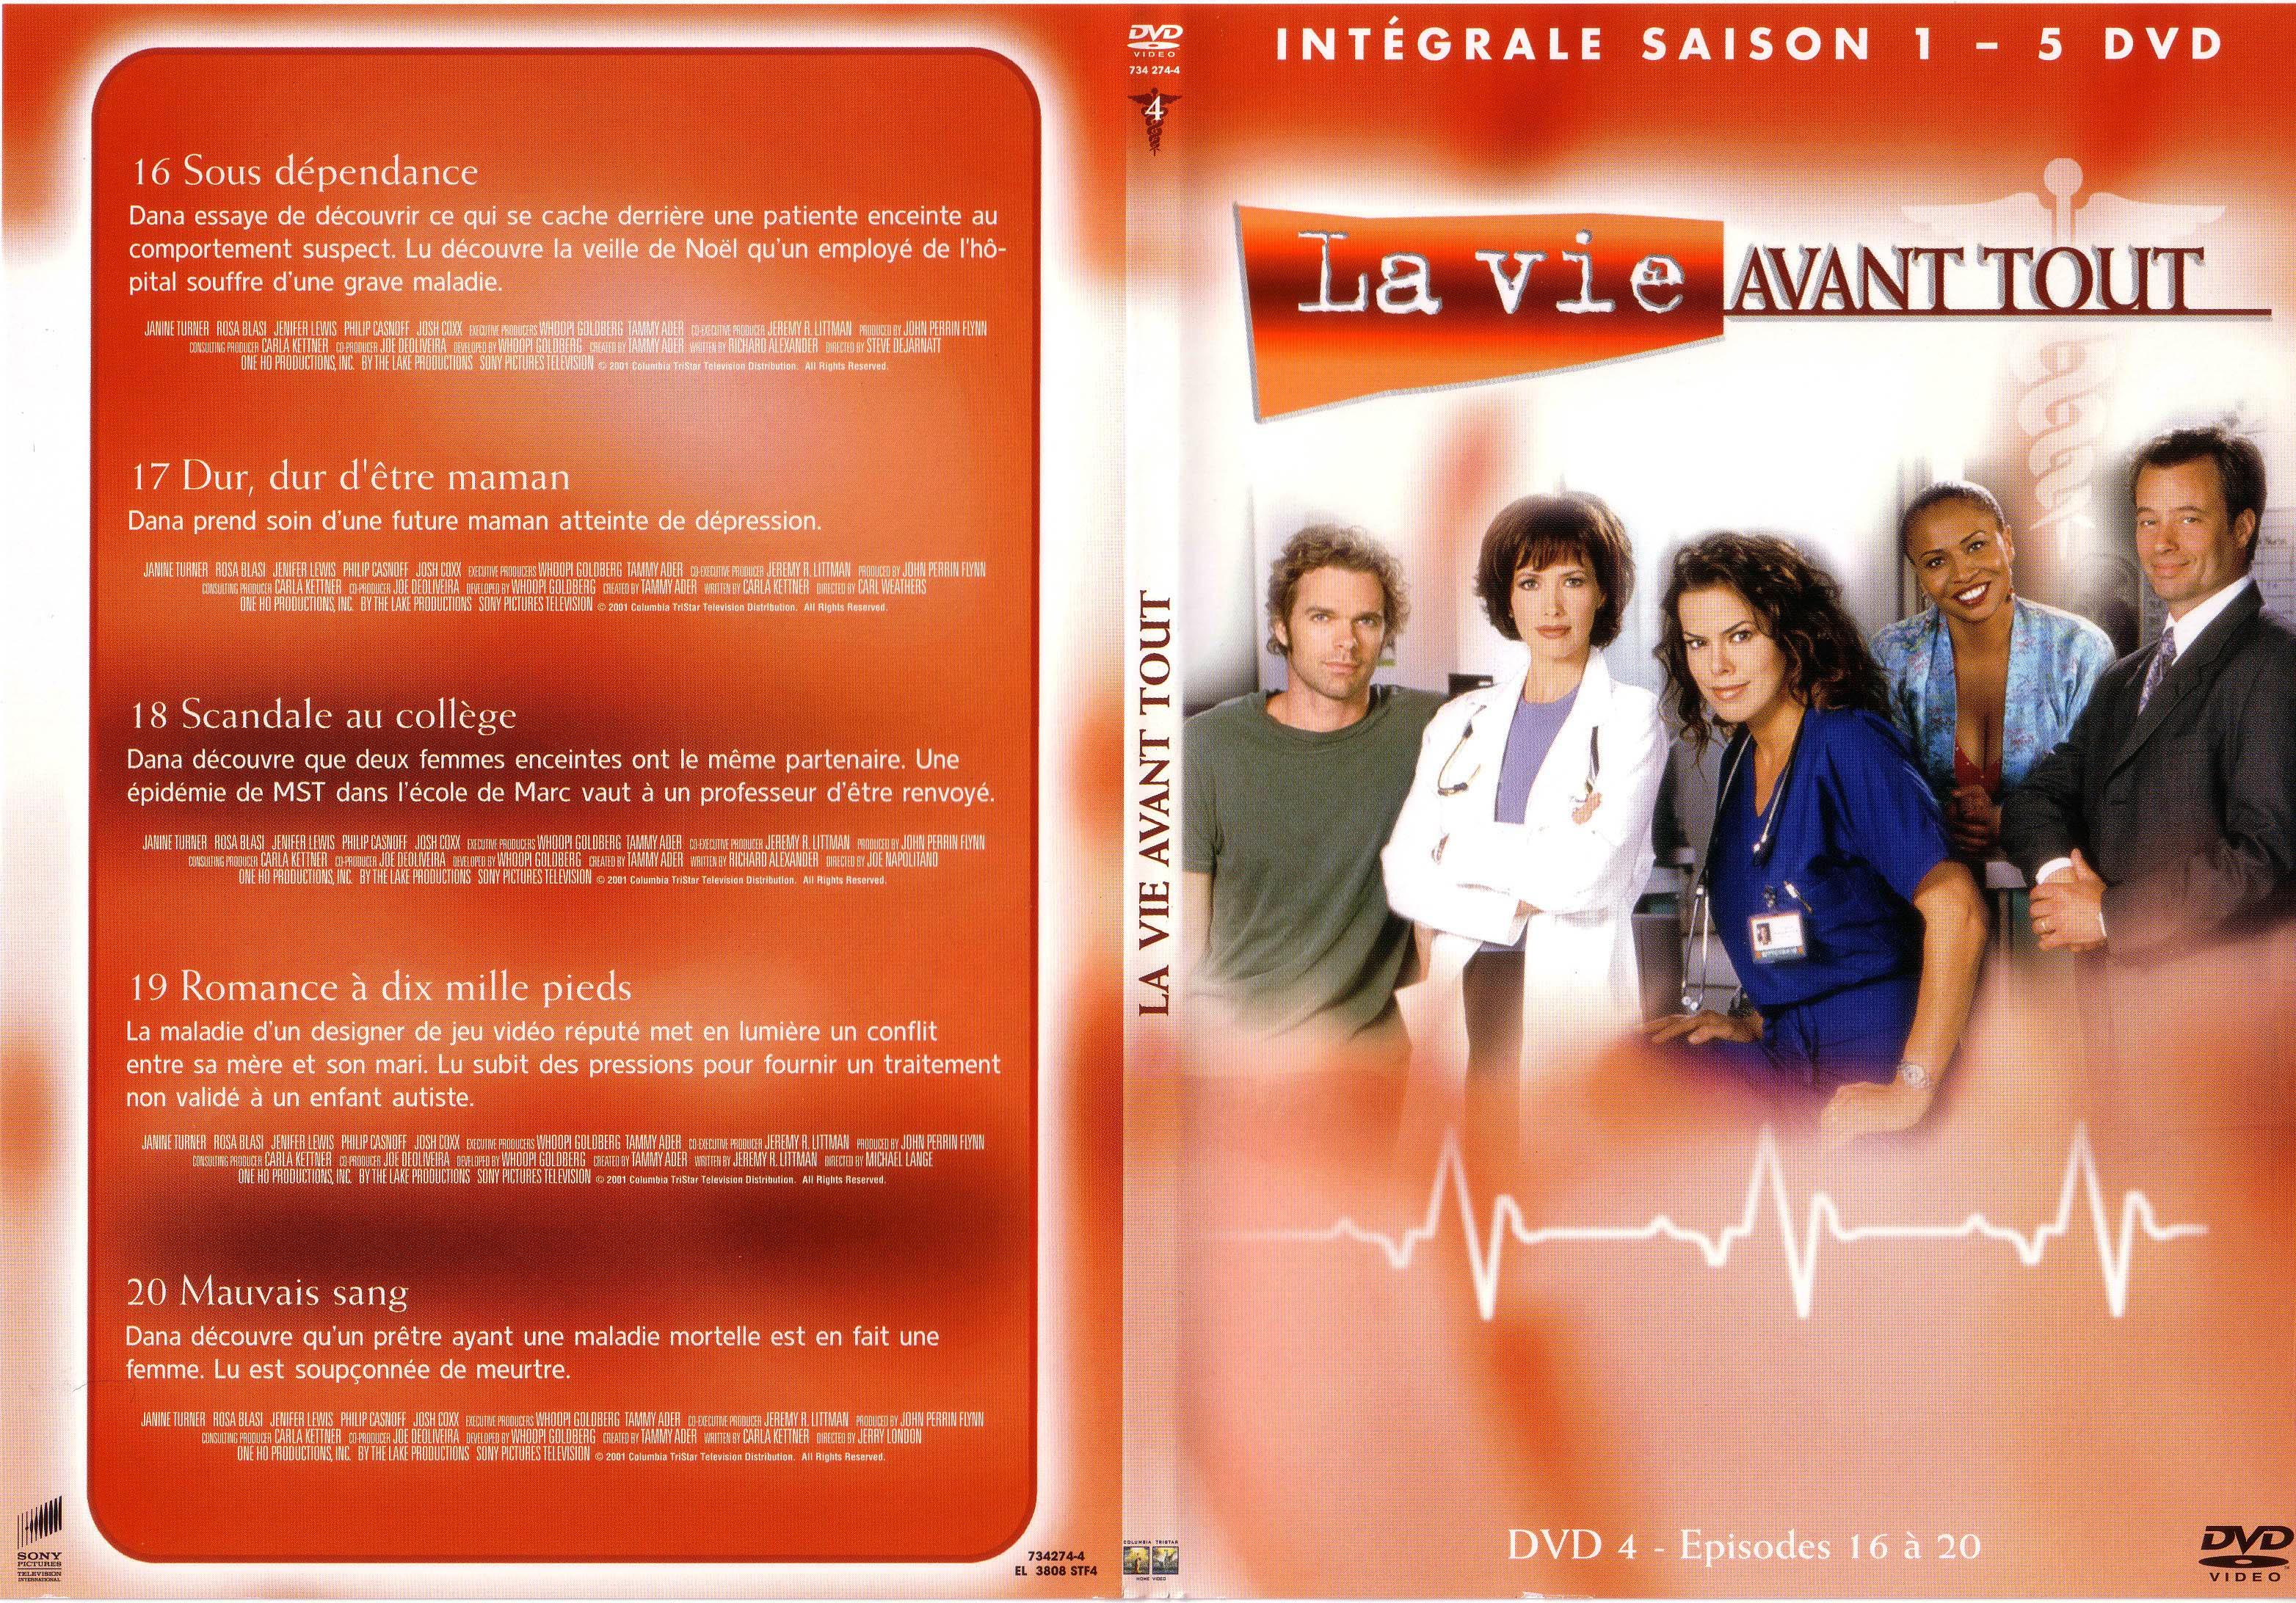 Jaquette DVD La vie avant tout Saison 1 vol 4